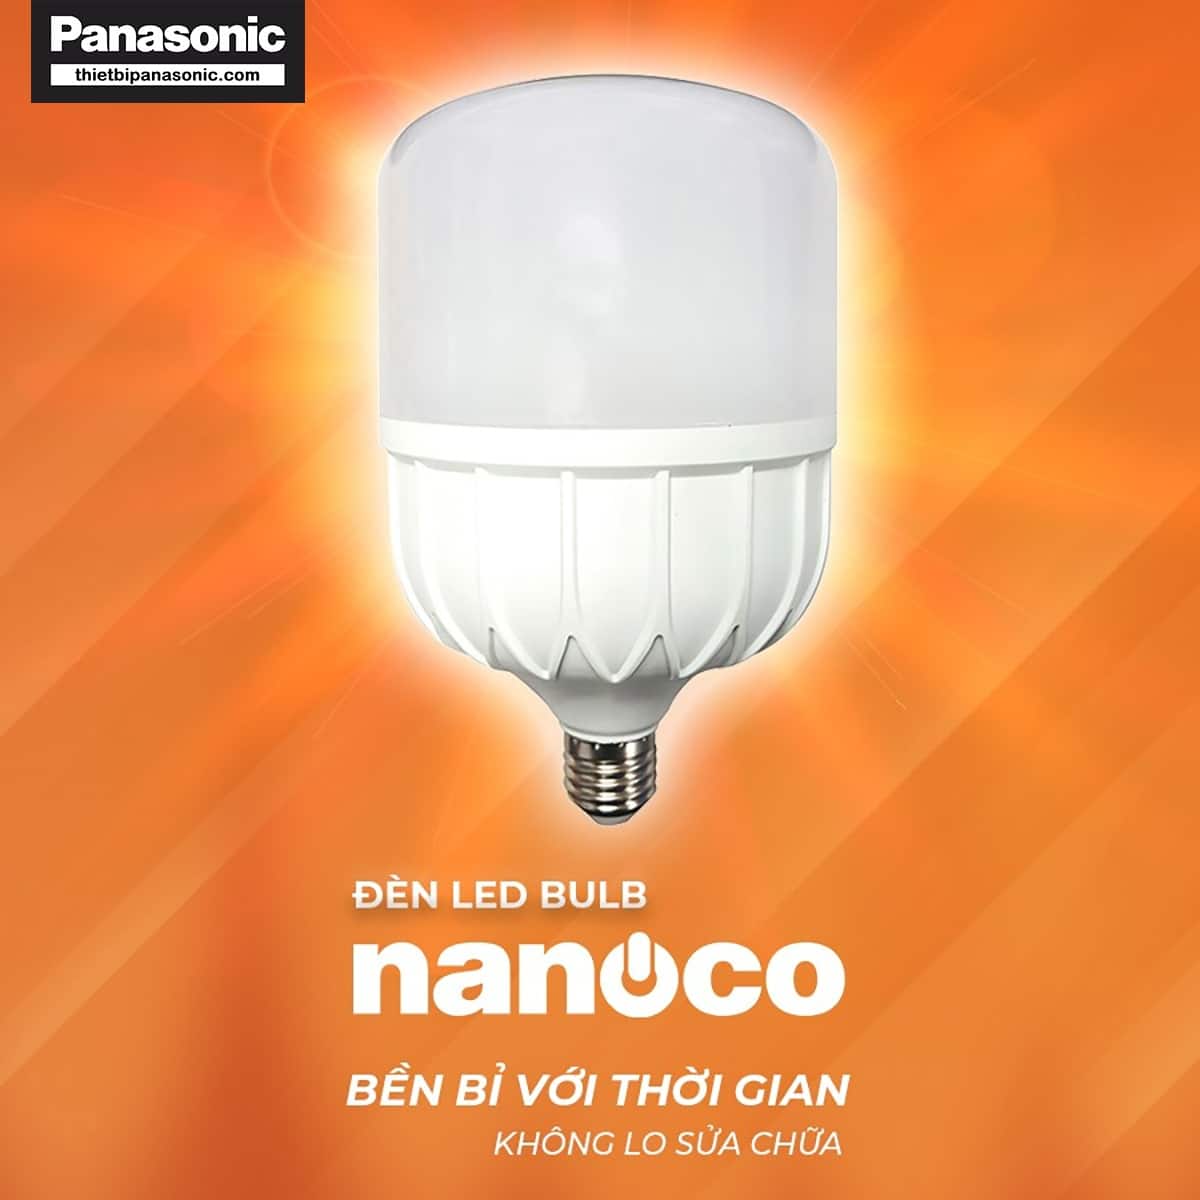 Bóng đèn LED bulb 60W Nanoco NLB606, NLB604, NLB603 bền bỉ với thời gian không lo sửa chữa